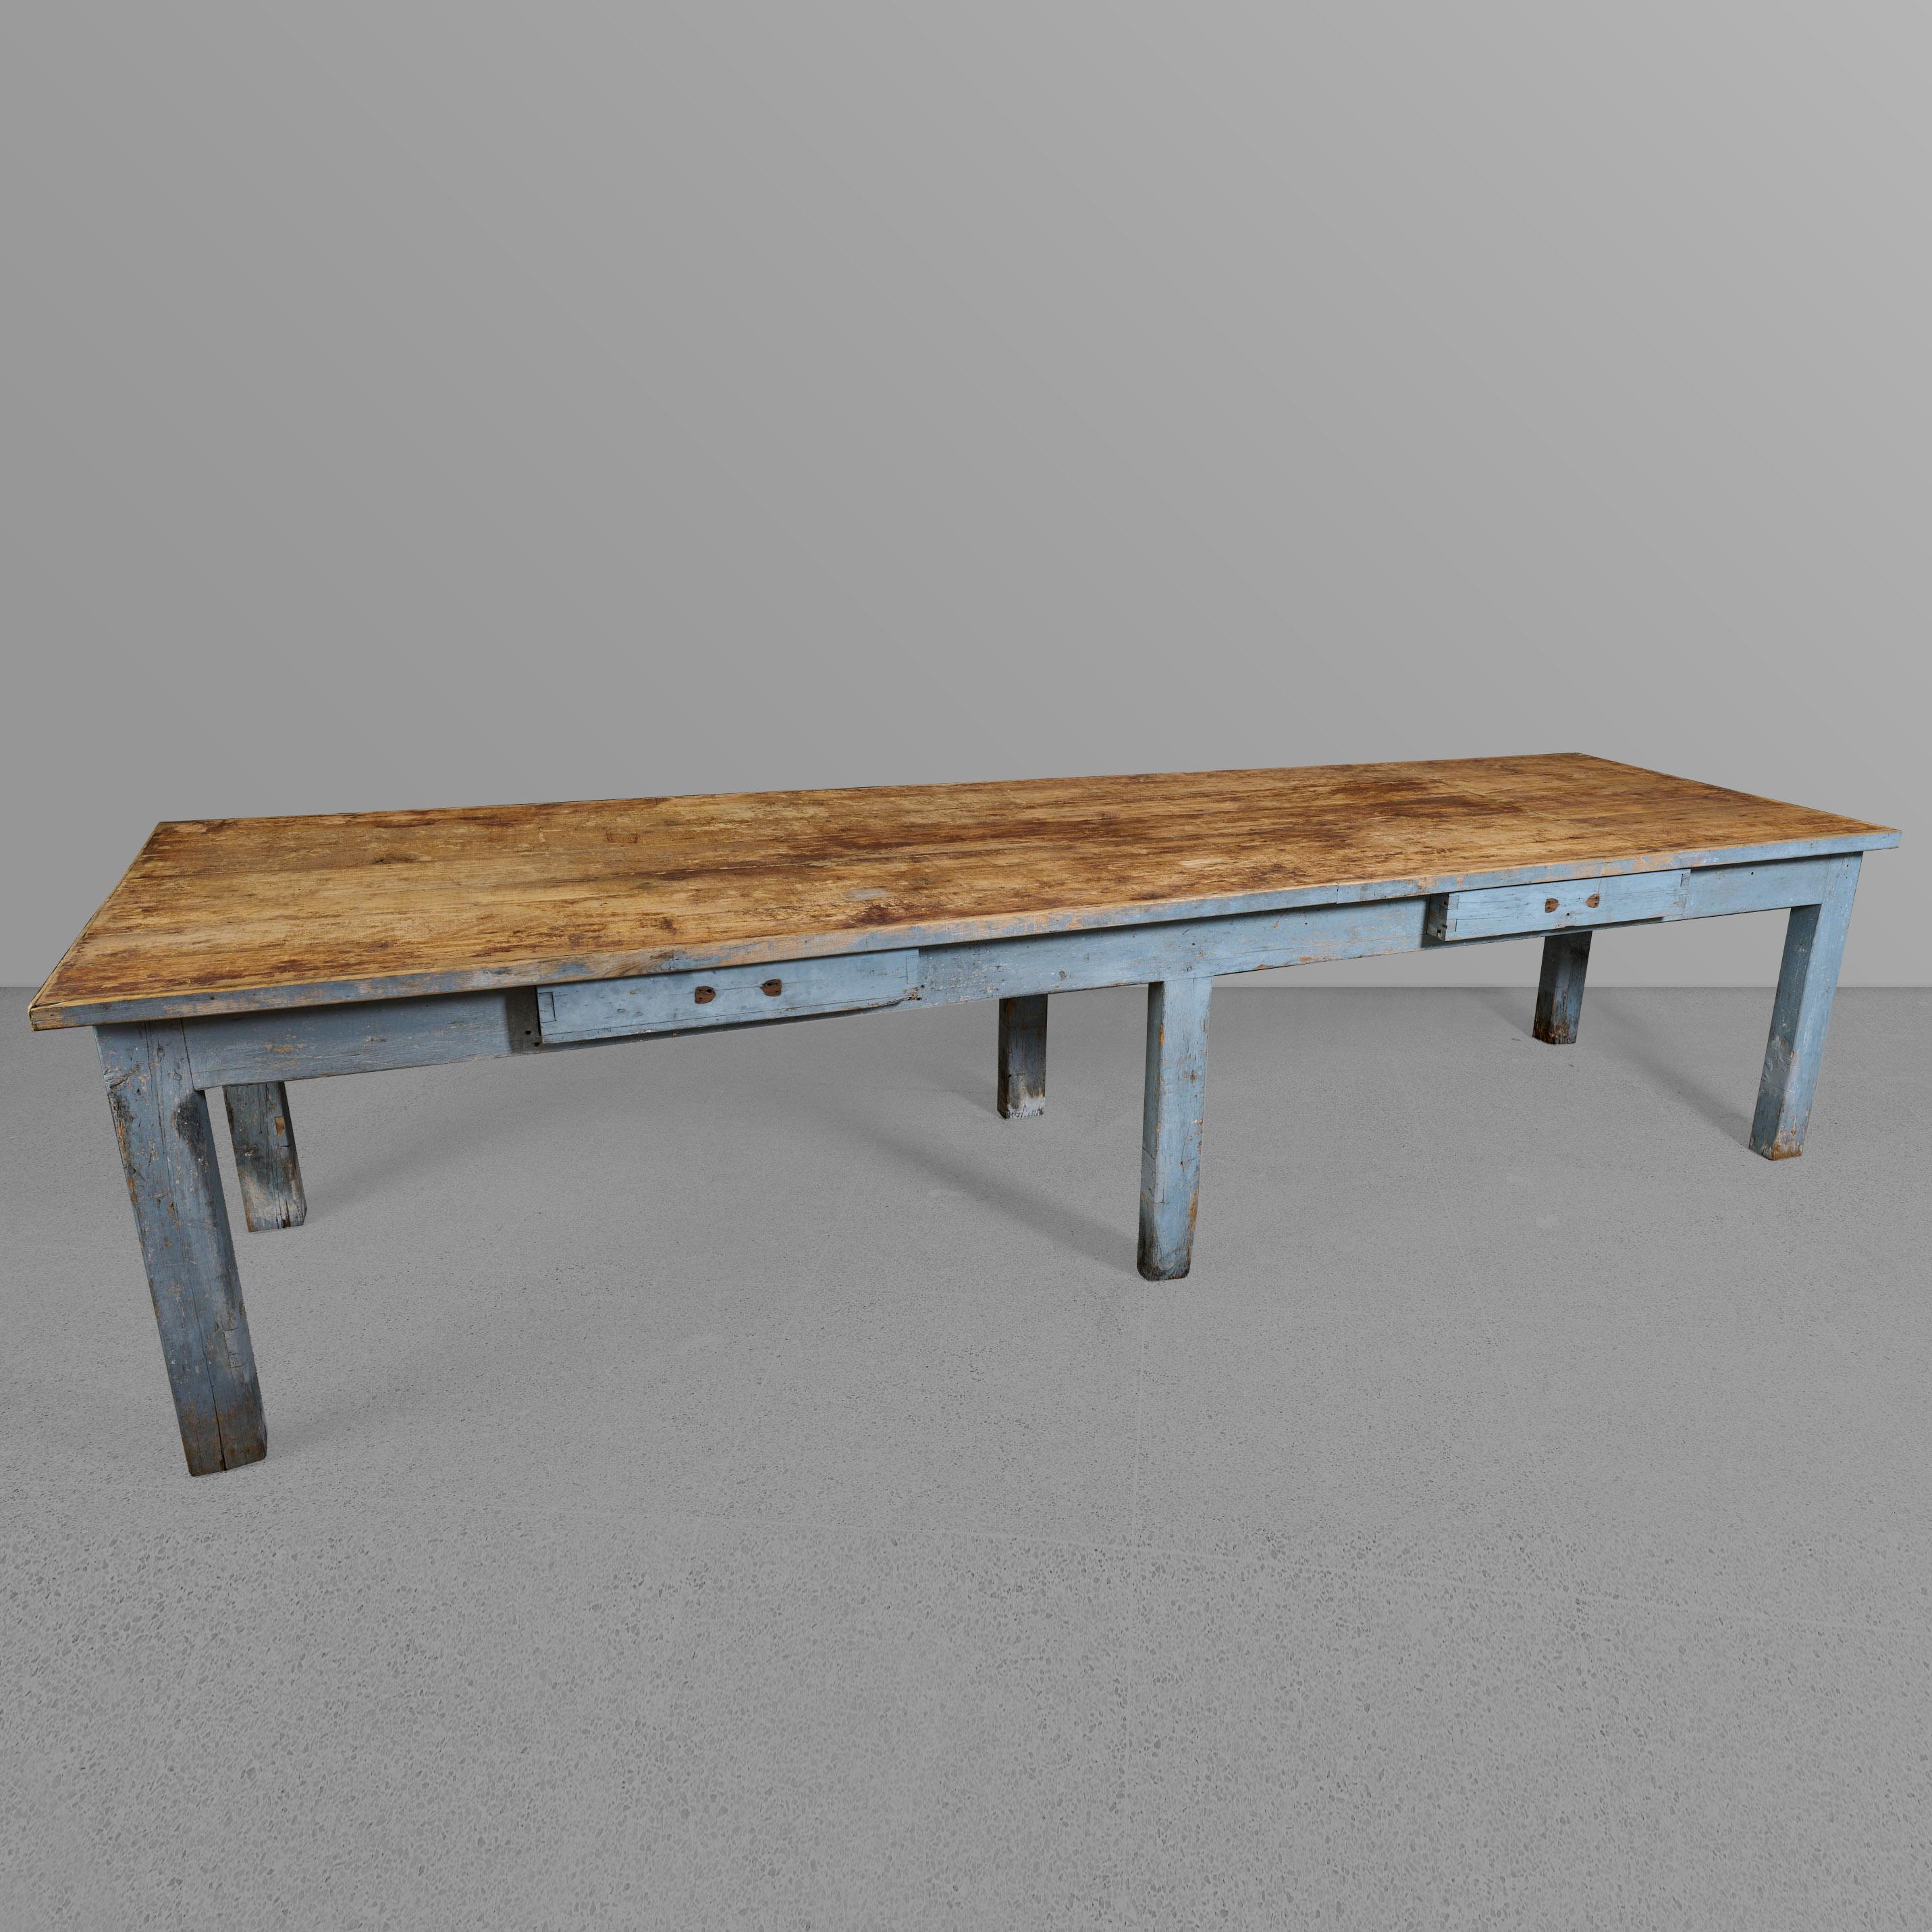 Table à six pieds avec tiroirs. Magnifique plateau en bois naturel et base peinte en bleu.

